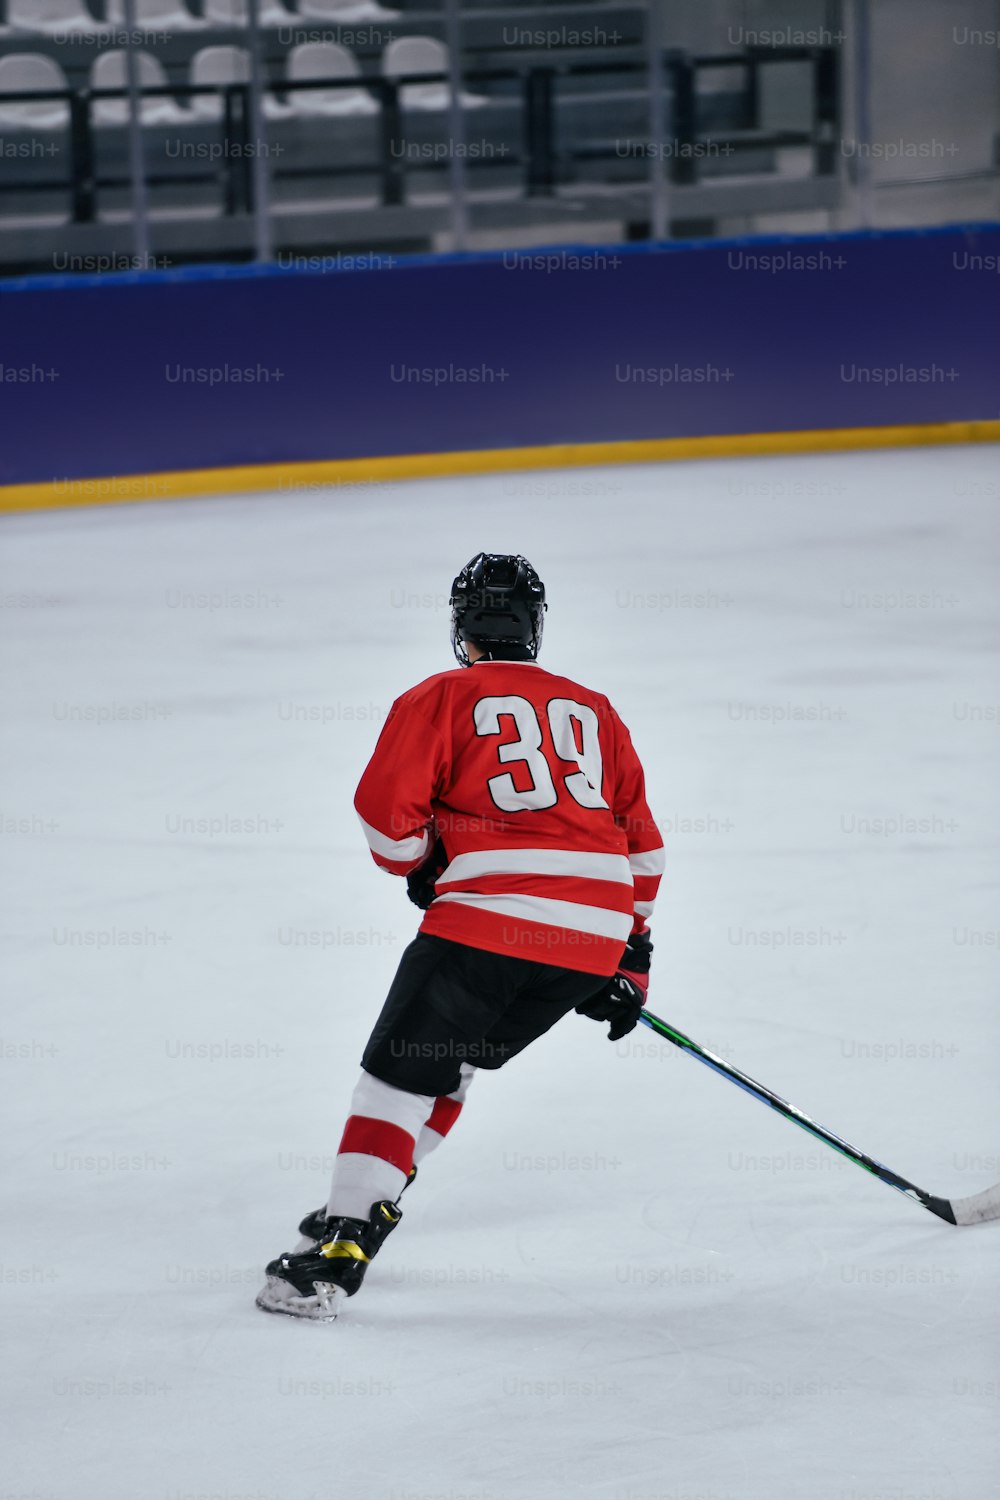 빨간 저지를 입은 하키 선수가 아이스링크에서 스케이트를 타고 있다